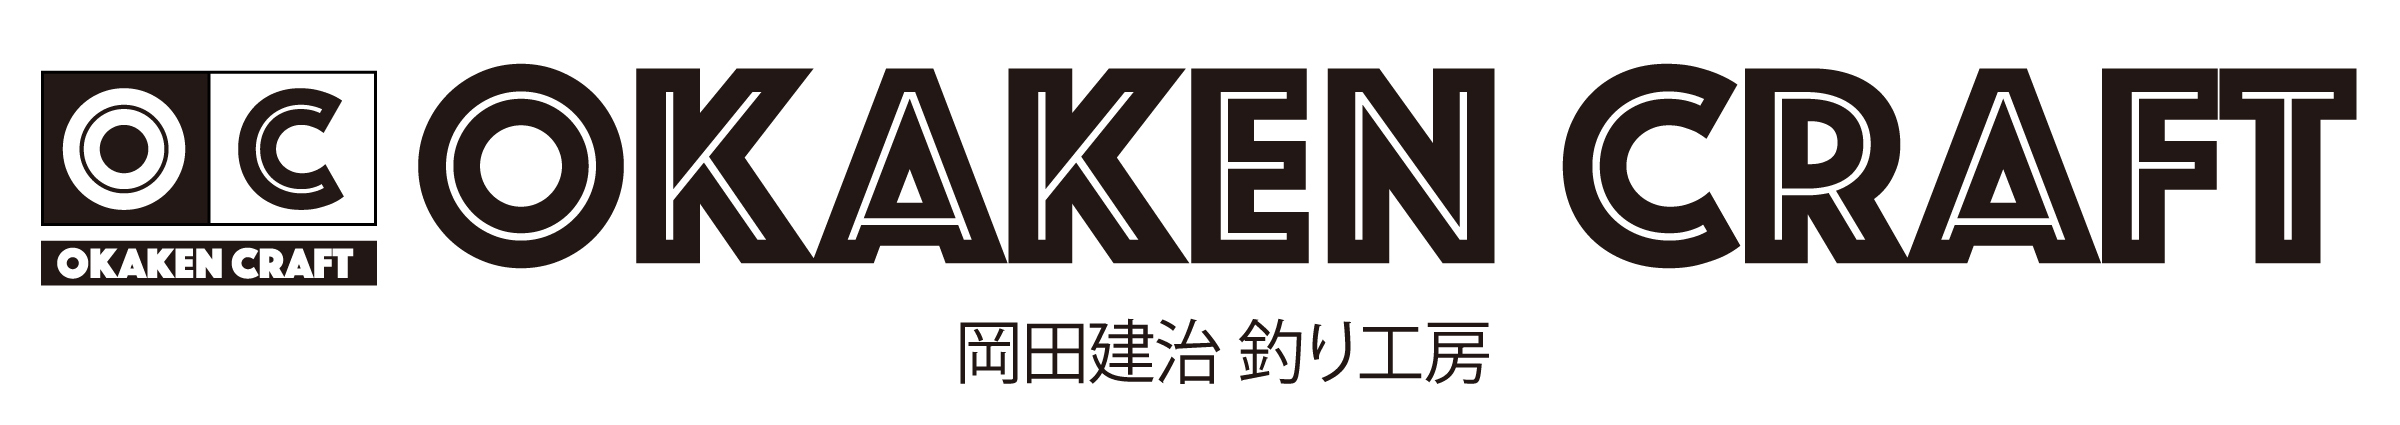 岡田建治オリジナルグッズの通販ショップ『OKAKEN CRAFT』